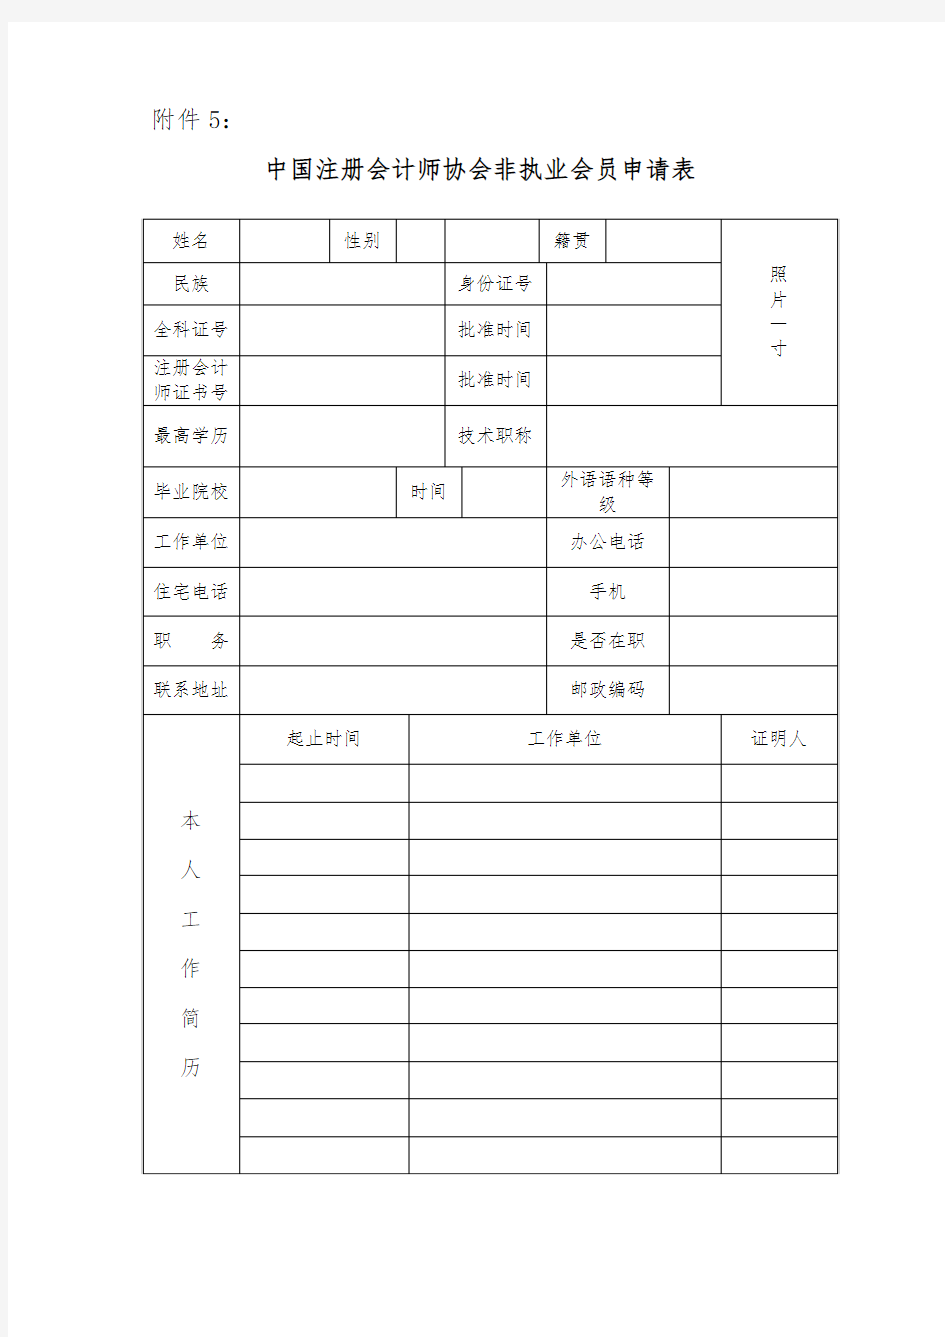 中国注册会计师协会非执业会员申请表